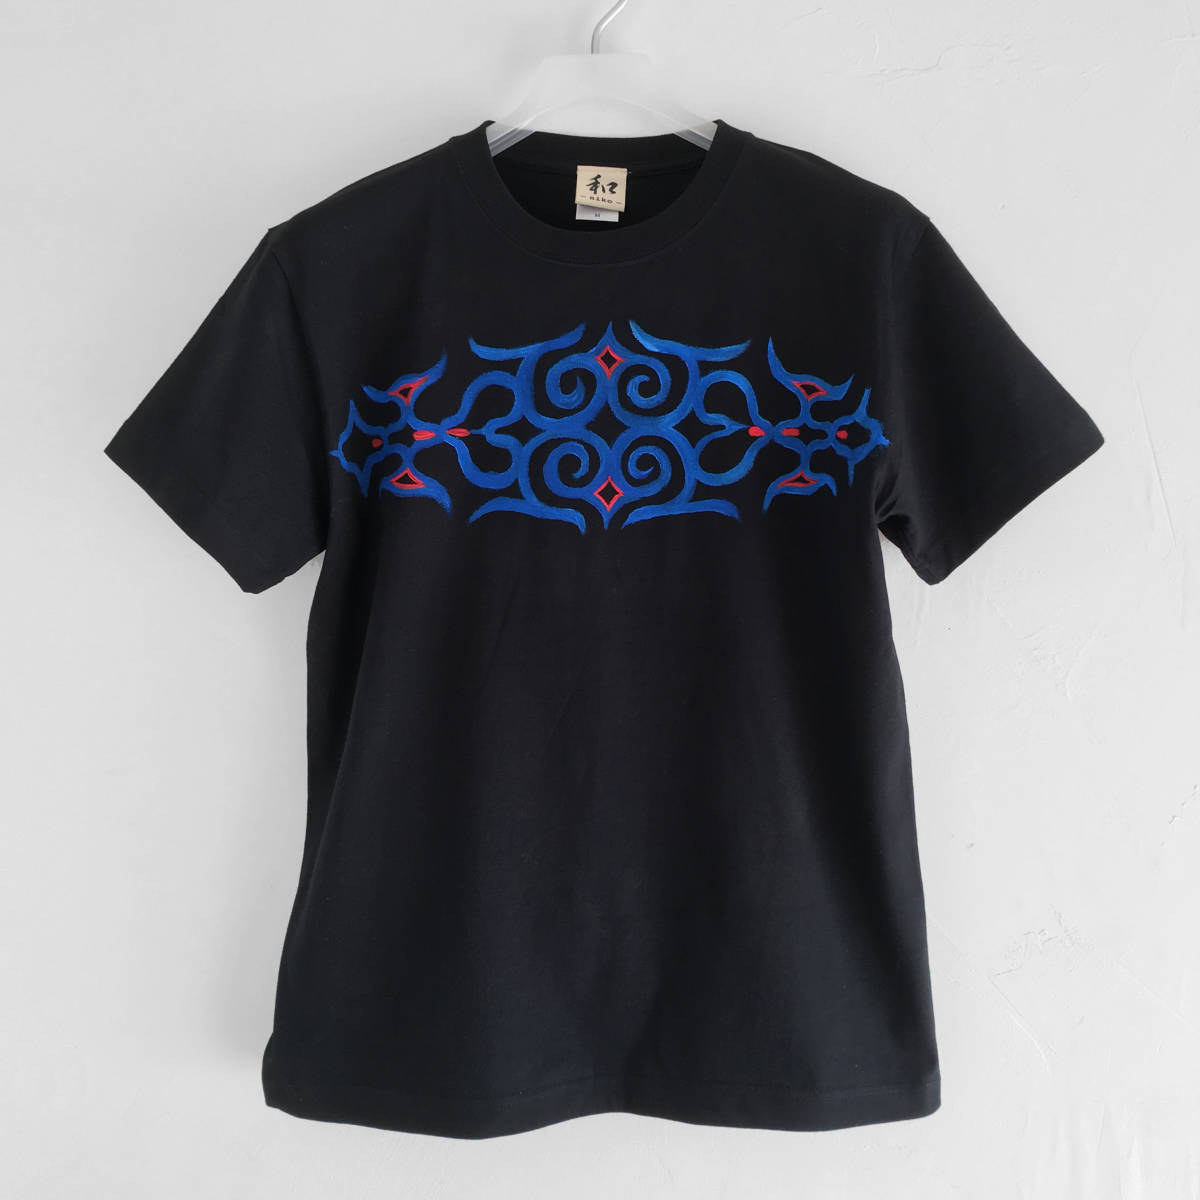 Herren T-Shirt mit Ainu-Arabesken- und Eulenmuster, XL-Größe, Schwarz, T-Shirt mit handgezeichnetem Ainu-Muster, Japanisches Muster, Größe XL und größer, Rundhals, Gemustert